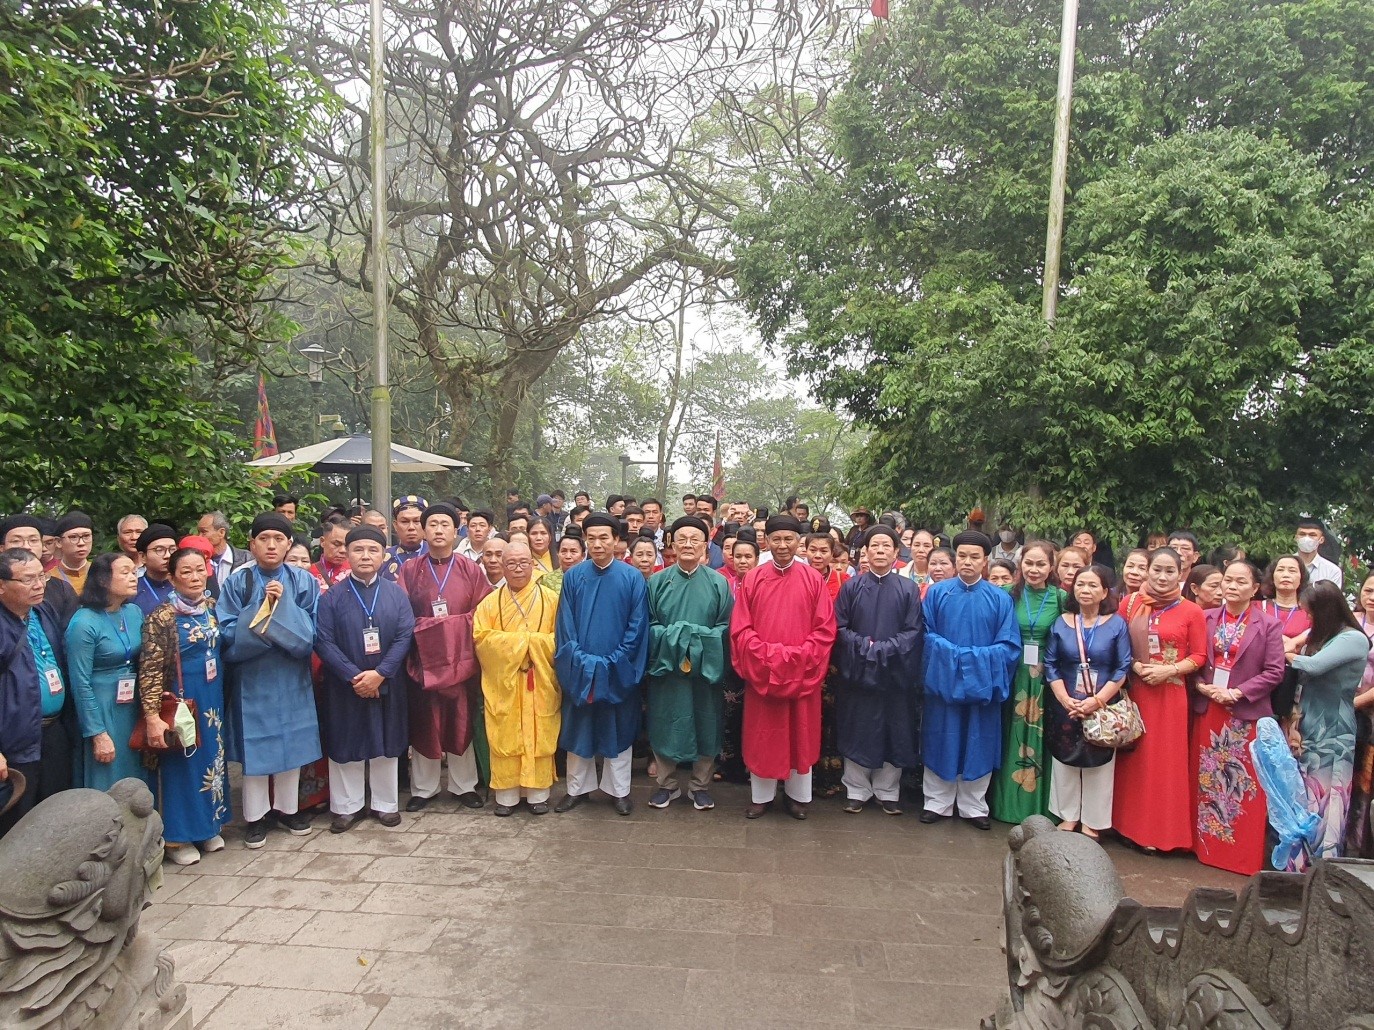 Hội Di sản văn hóa Việt Nam tổ chức Lễ dâng hương báo công các vua Hùng  tại Khu di tích lịch sử Đền Hùng